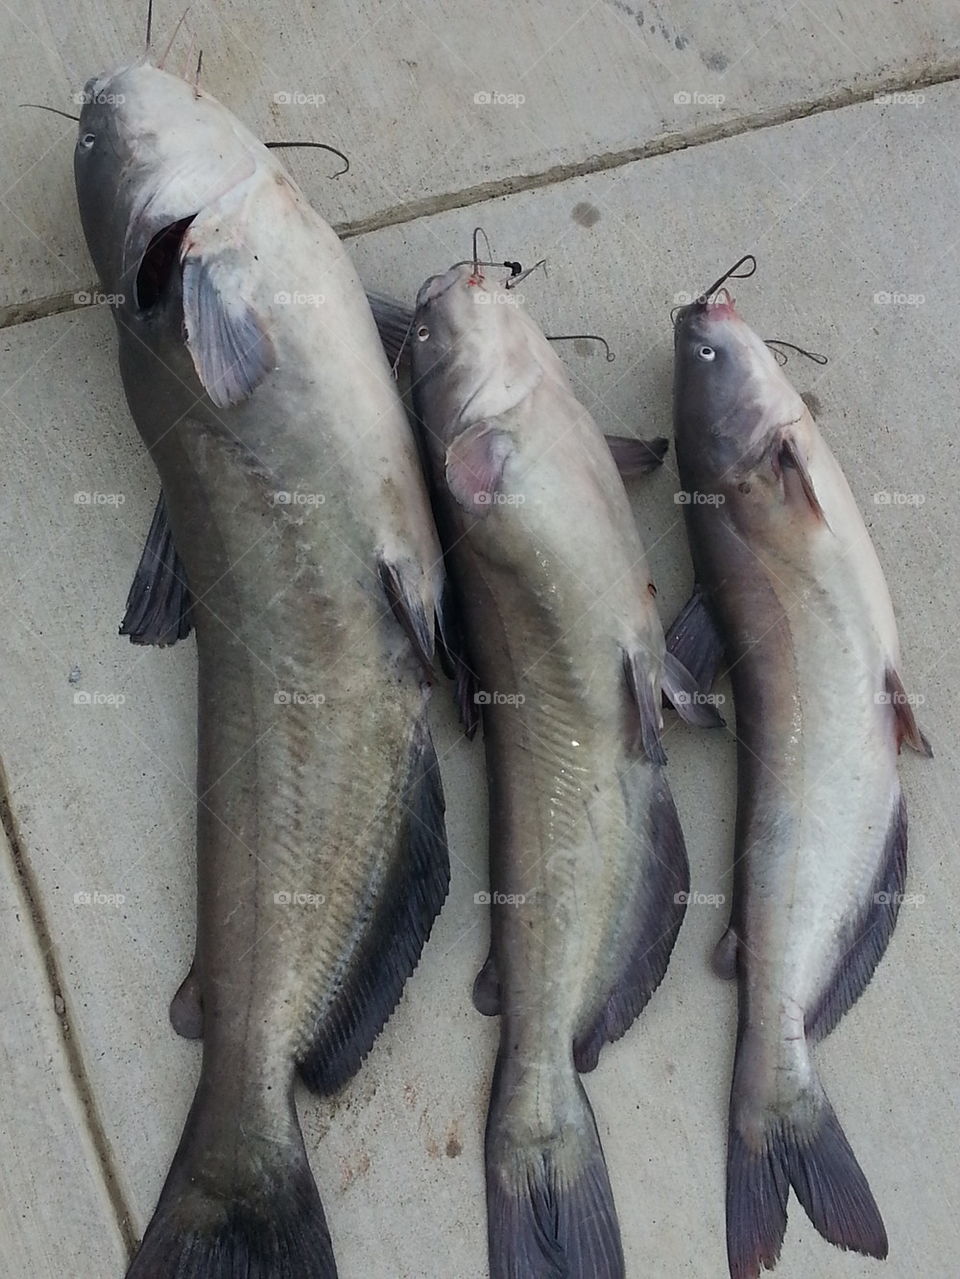 Three catfish